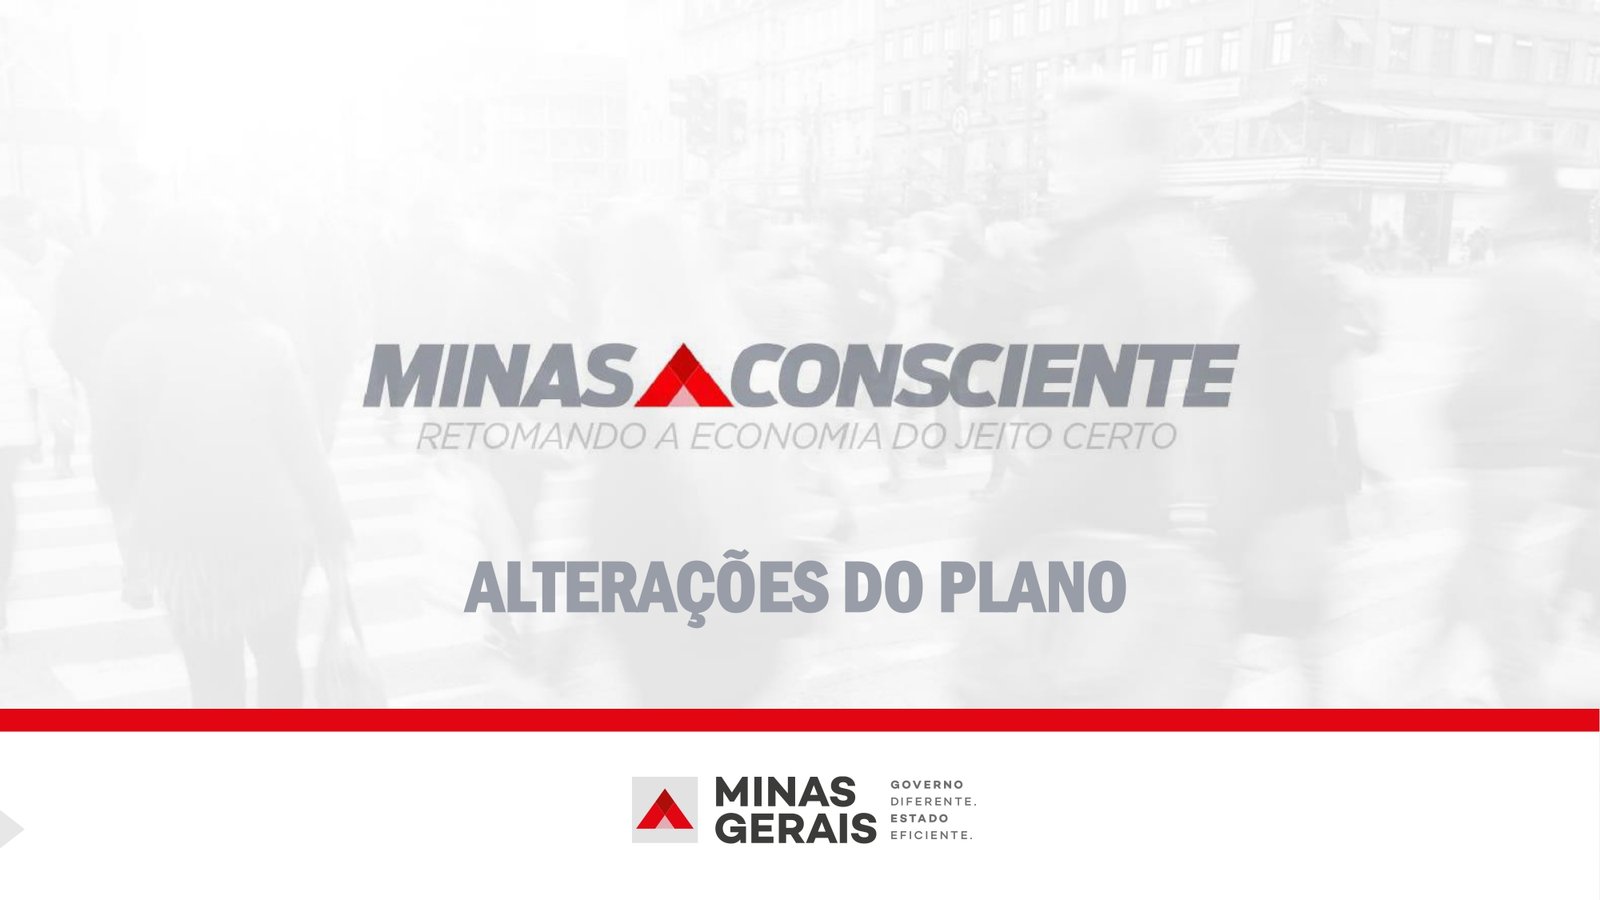 Minas_Consciente_Alteracoes_29_07_2020_page-0001